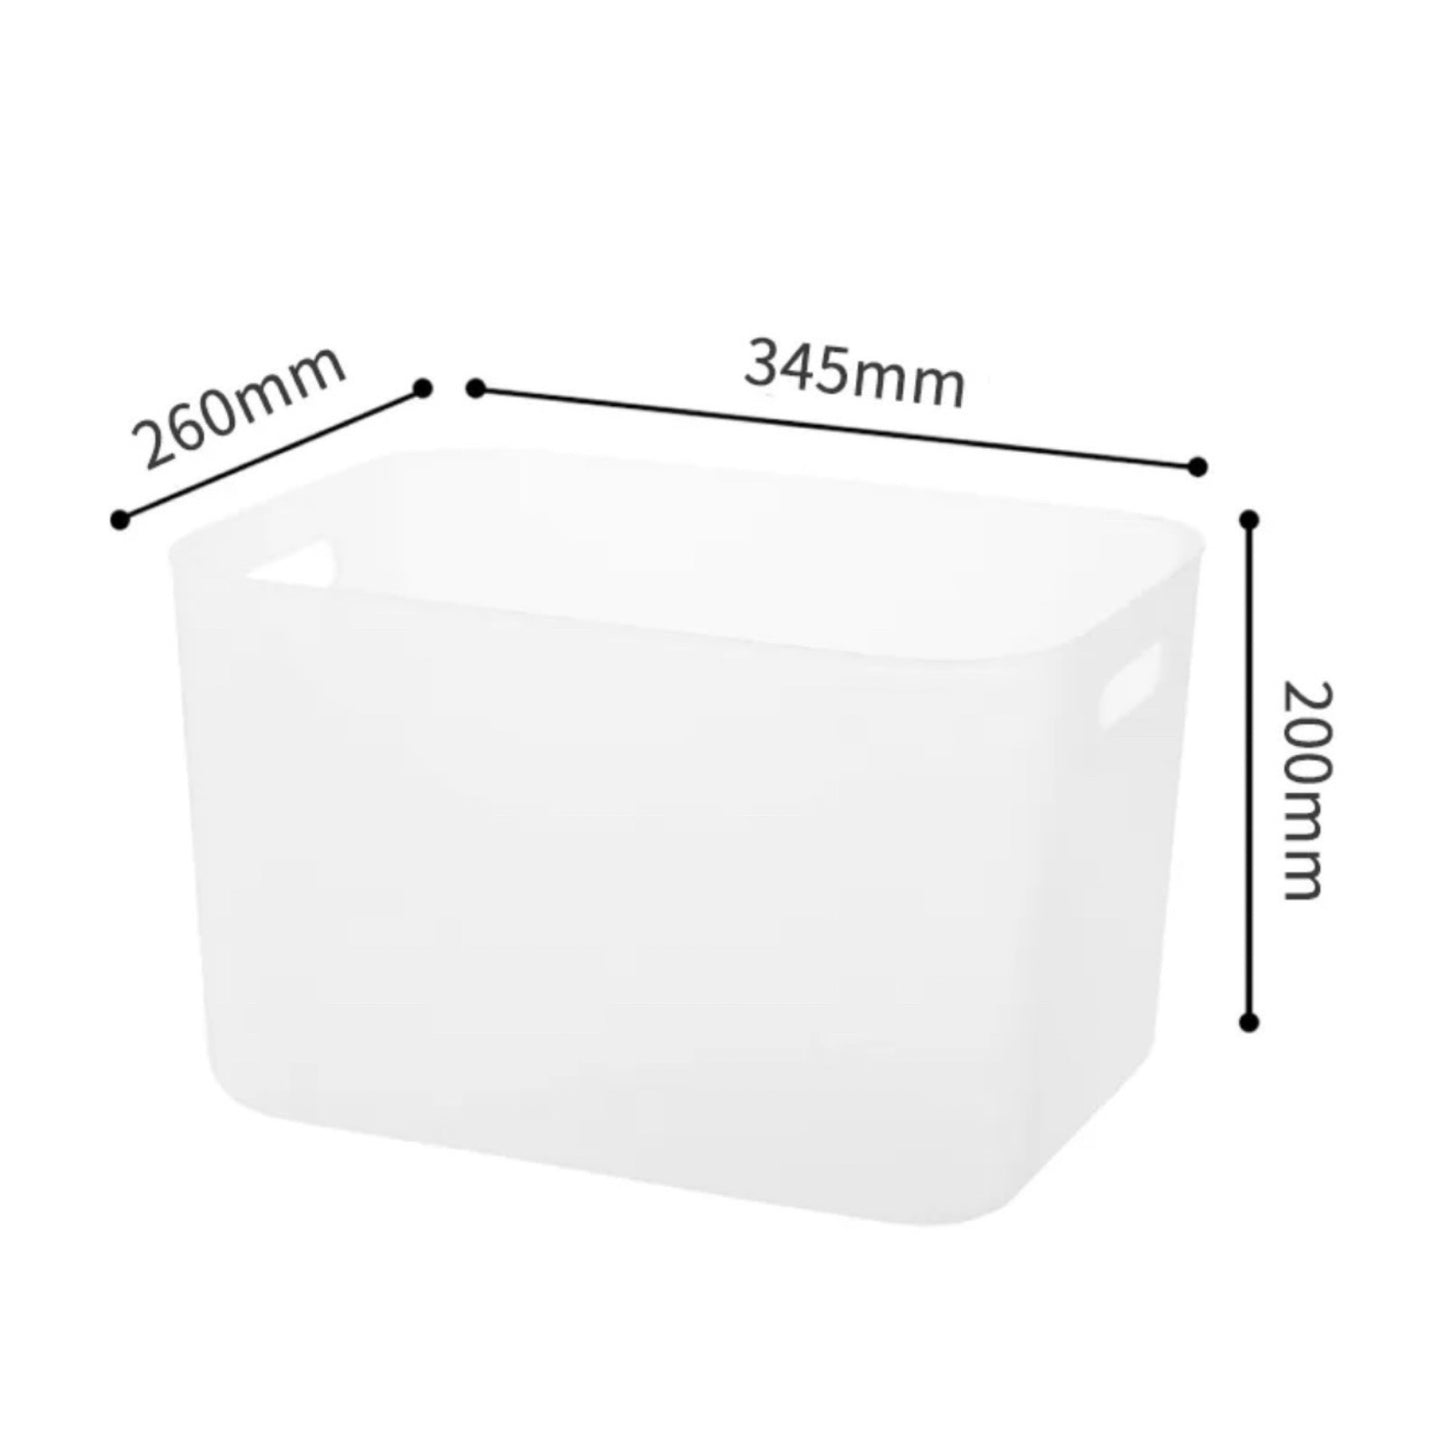 Weiße Aufbewahrungsbox mit beschrifteten Abmessungen. Länge 345 mm an der oberen Kante, Breite 260 mm an der Seitenkante und Höhe 200 mm